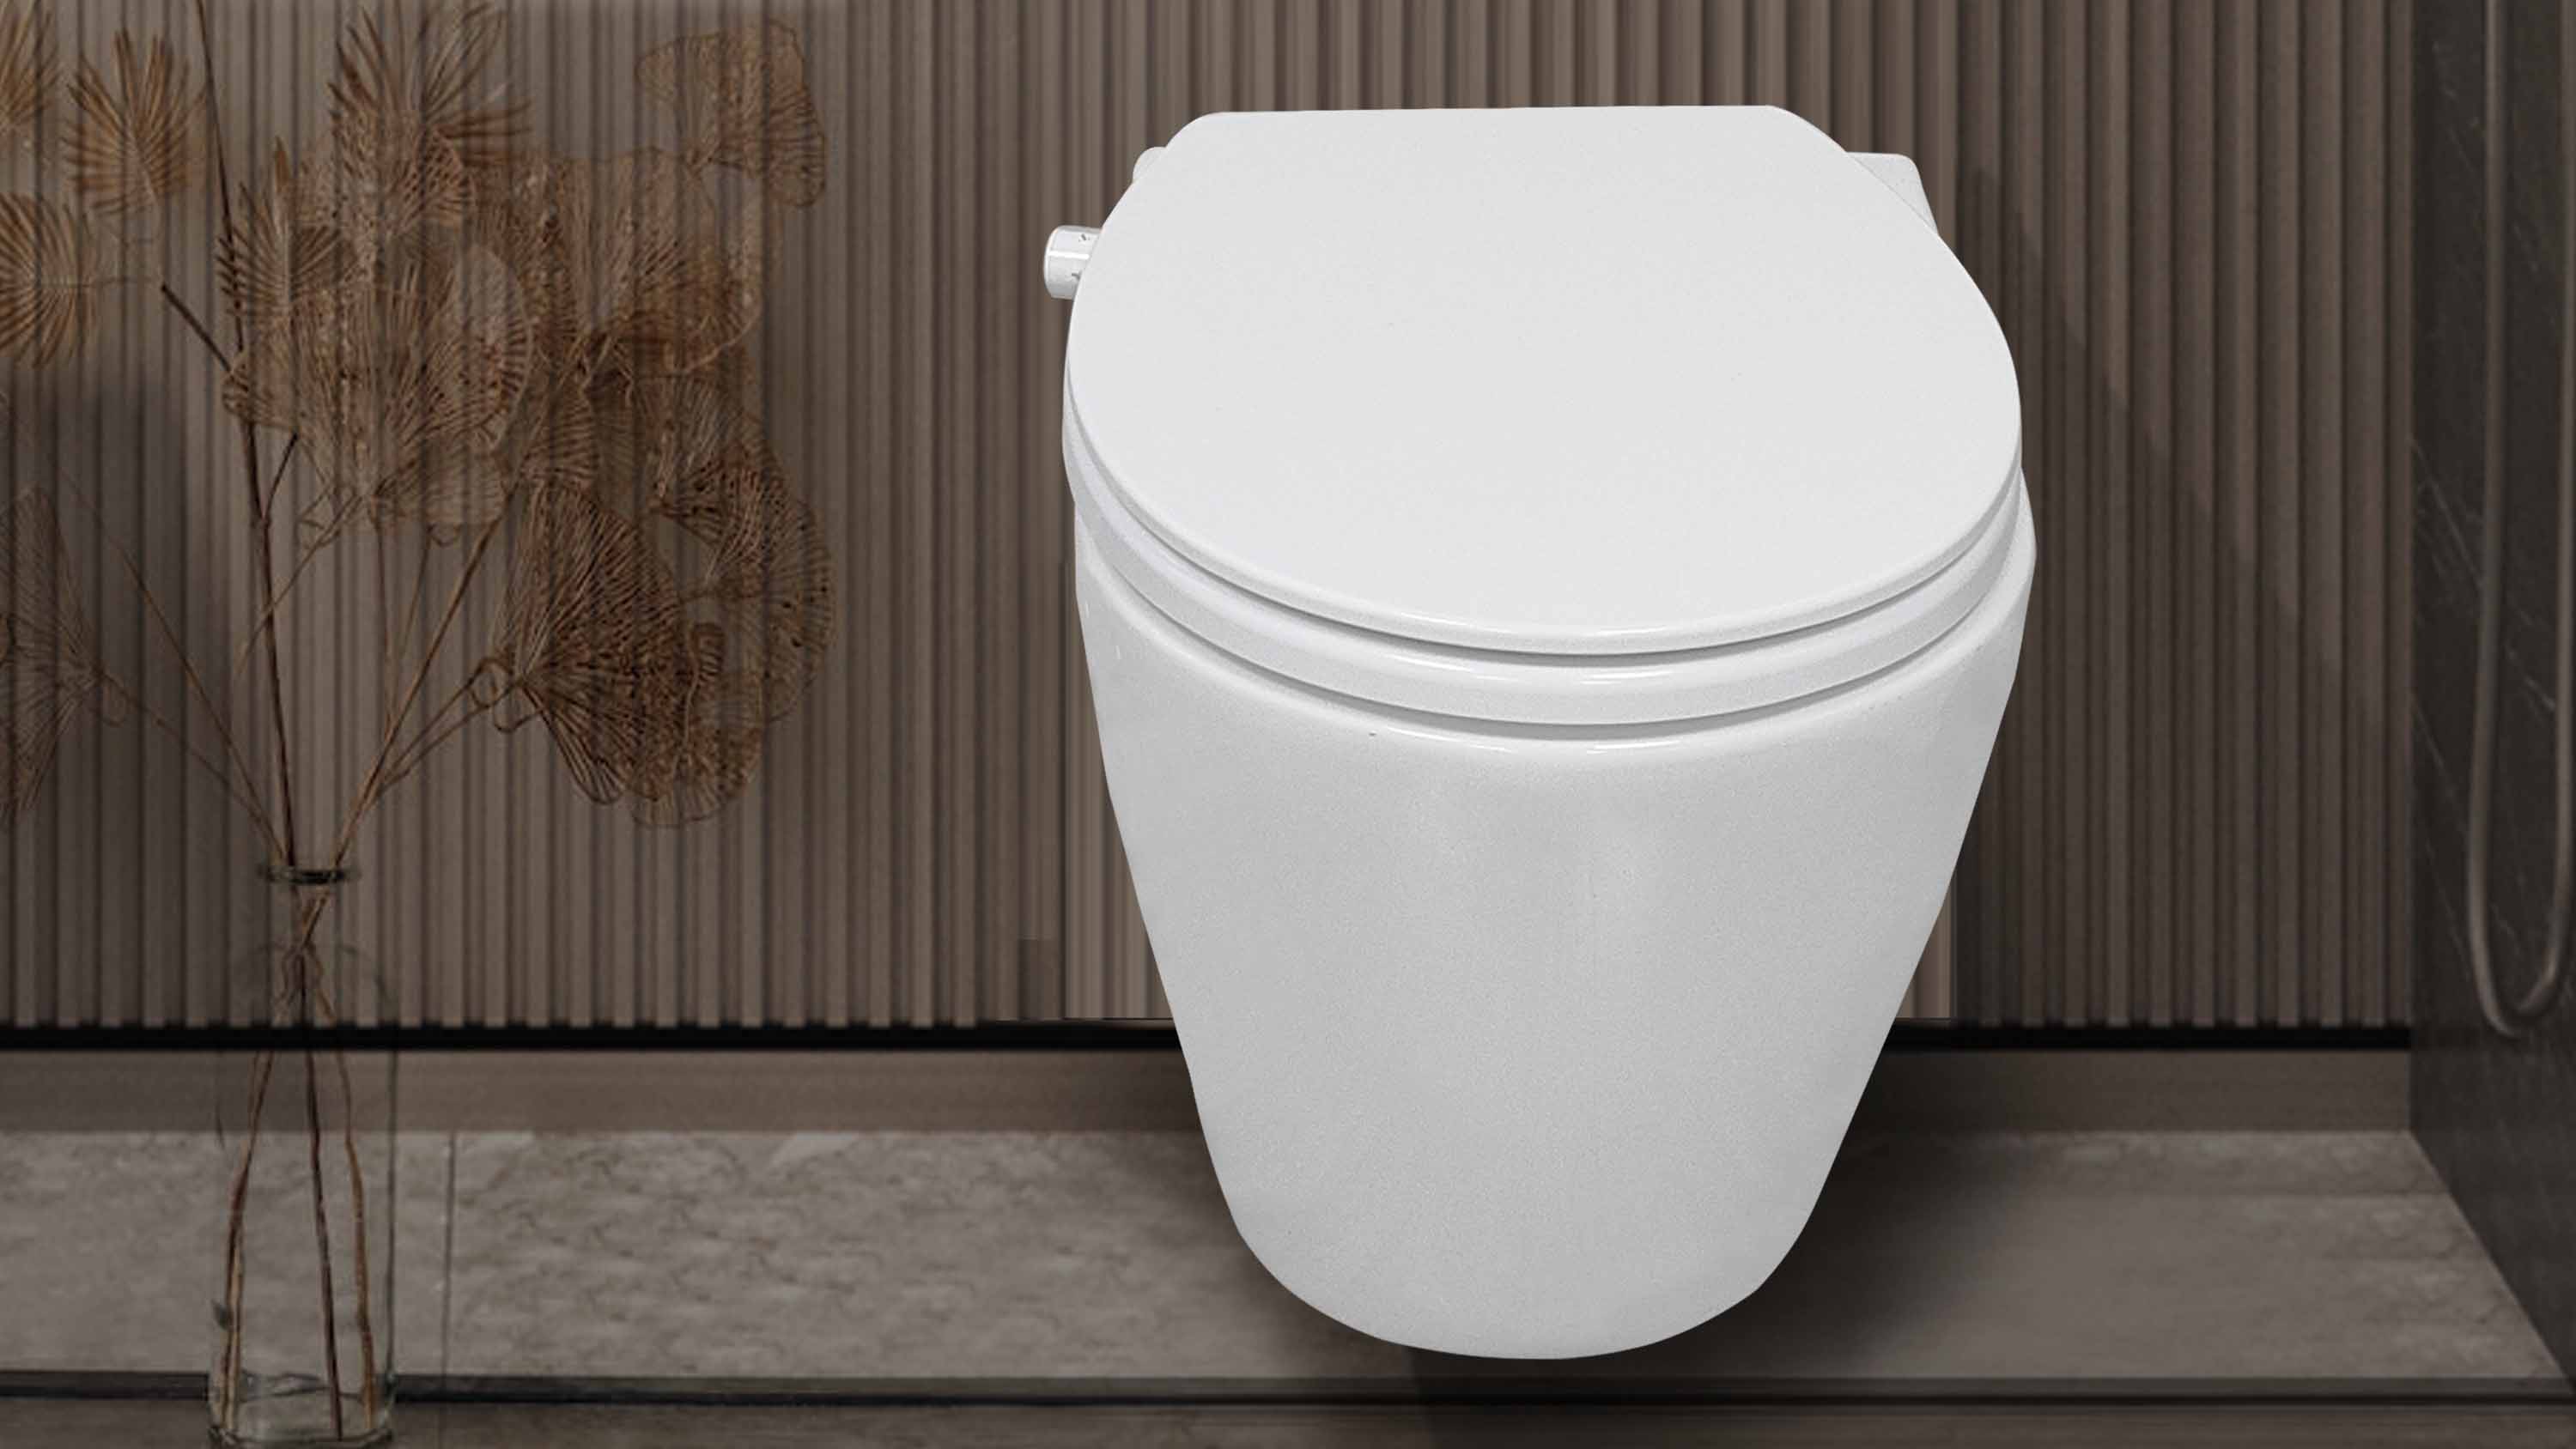 Wir stellen einen einzigartigen WC-Bidetsitz von Factory-Sineobath vor